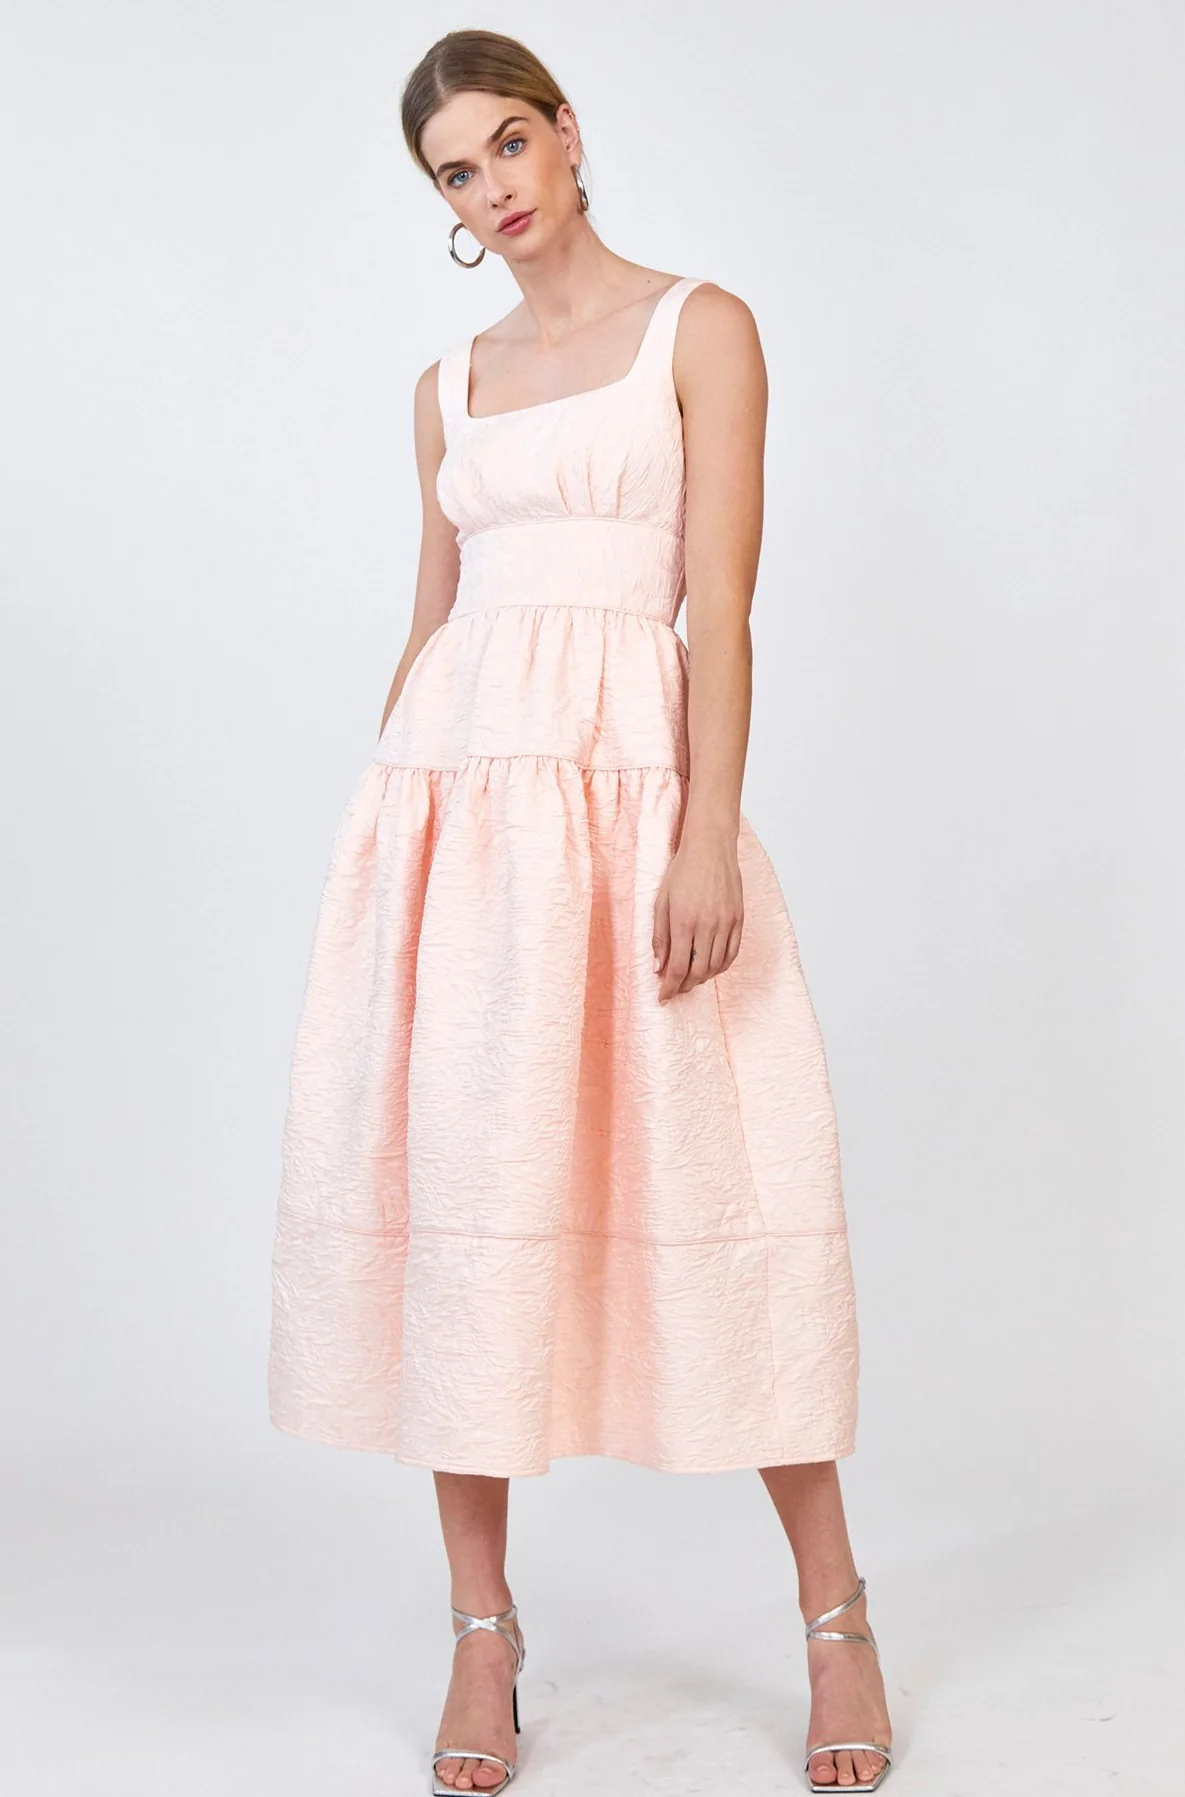 favorite spring pink dress